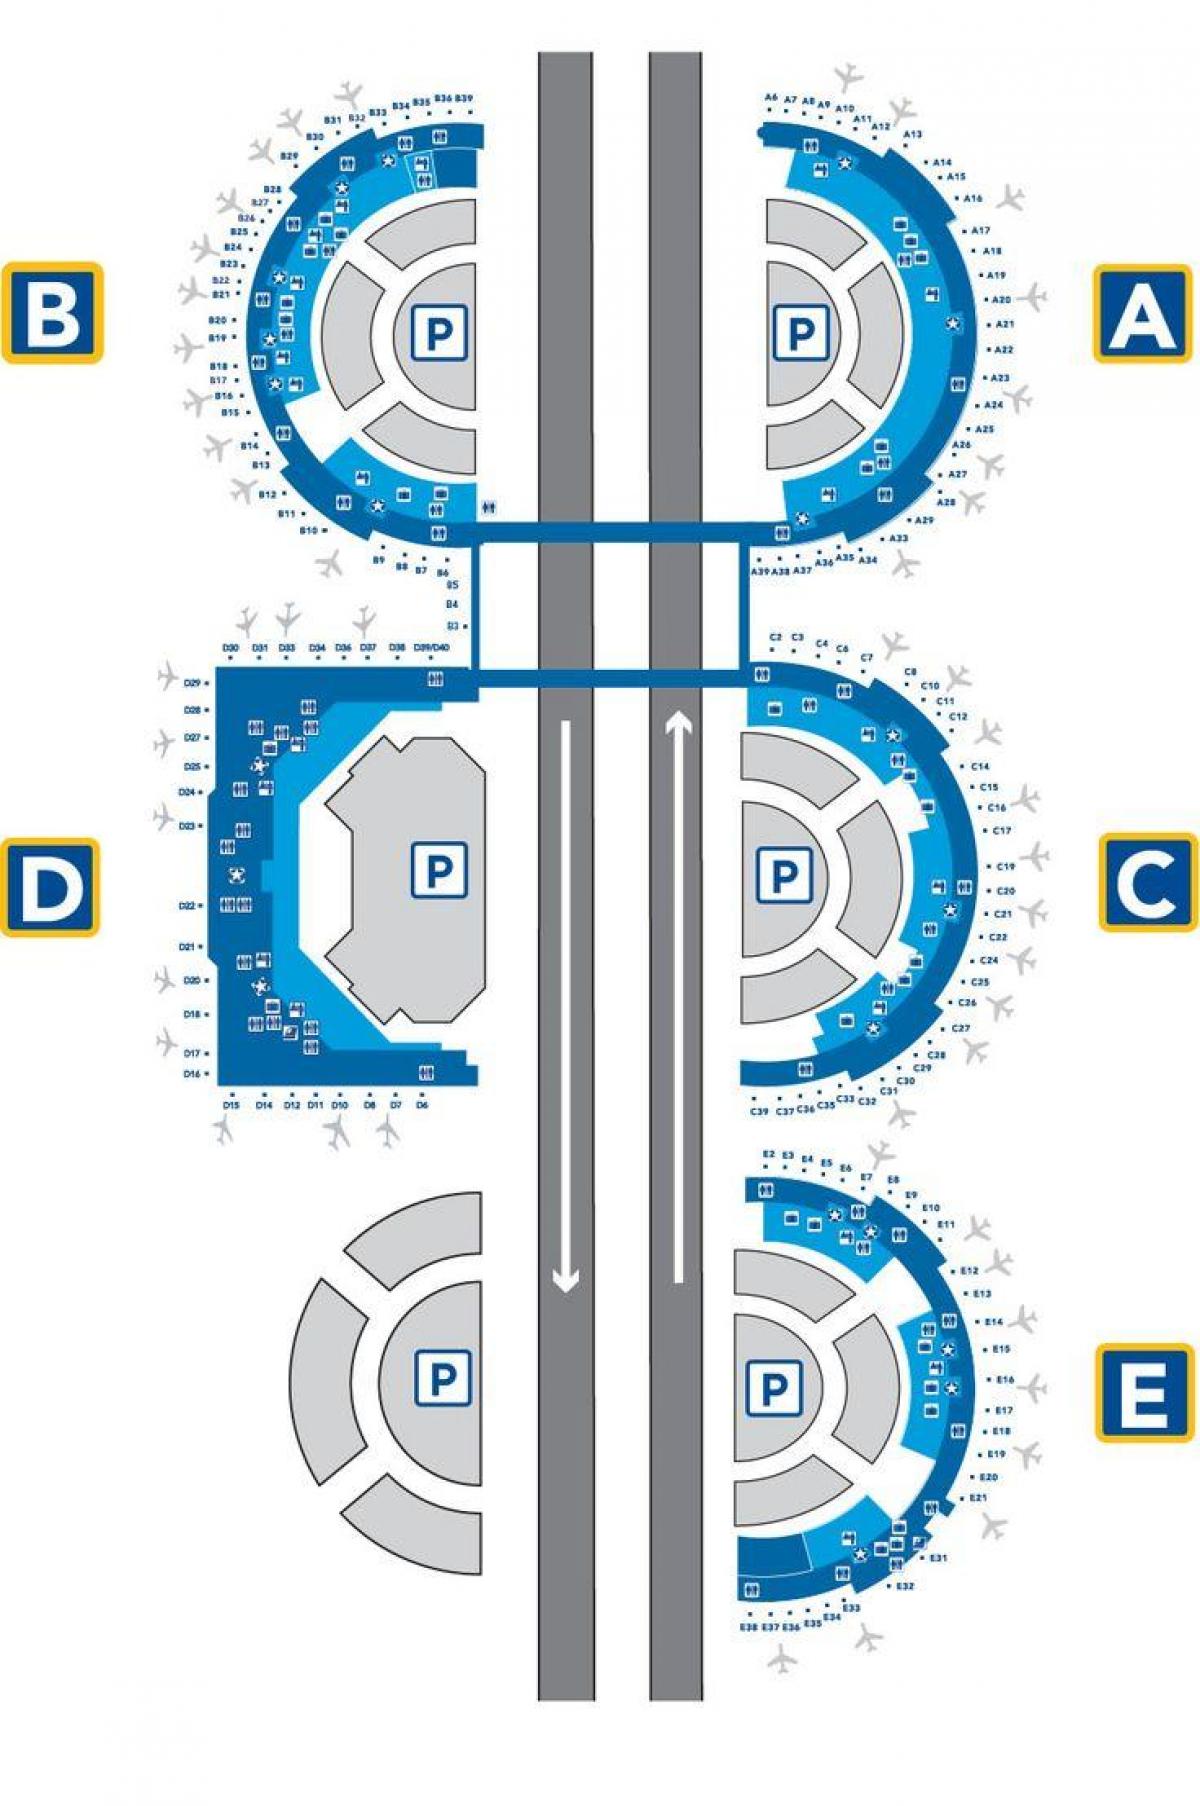 DFW oro uosto terminalą e žemėlapyje